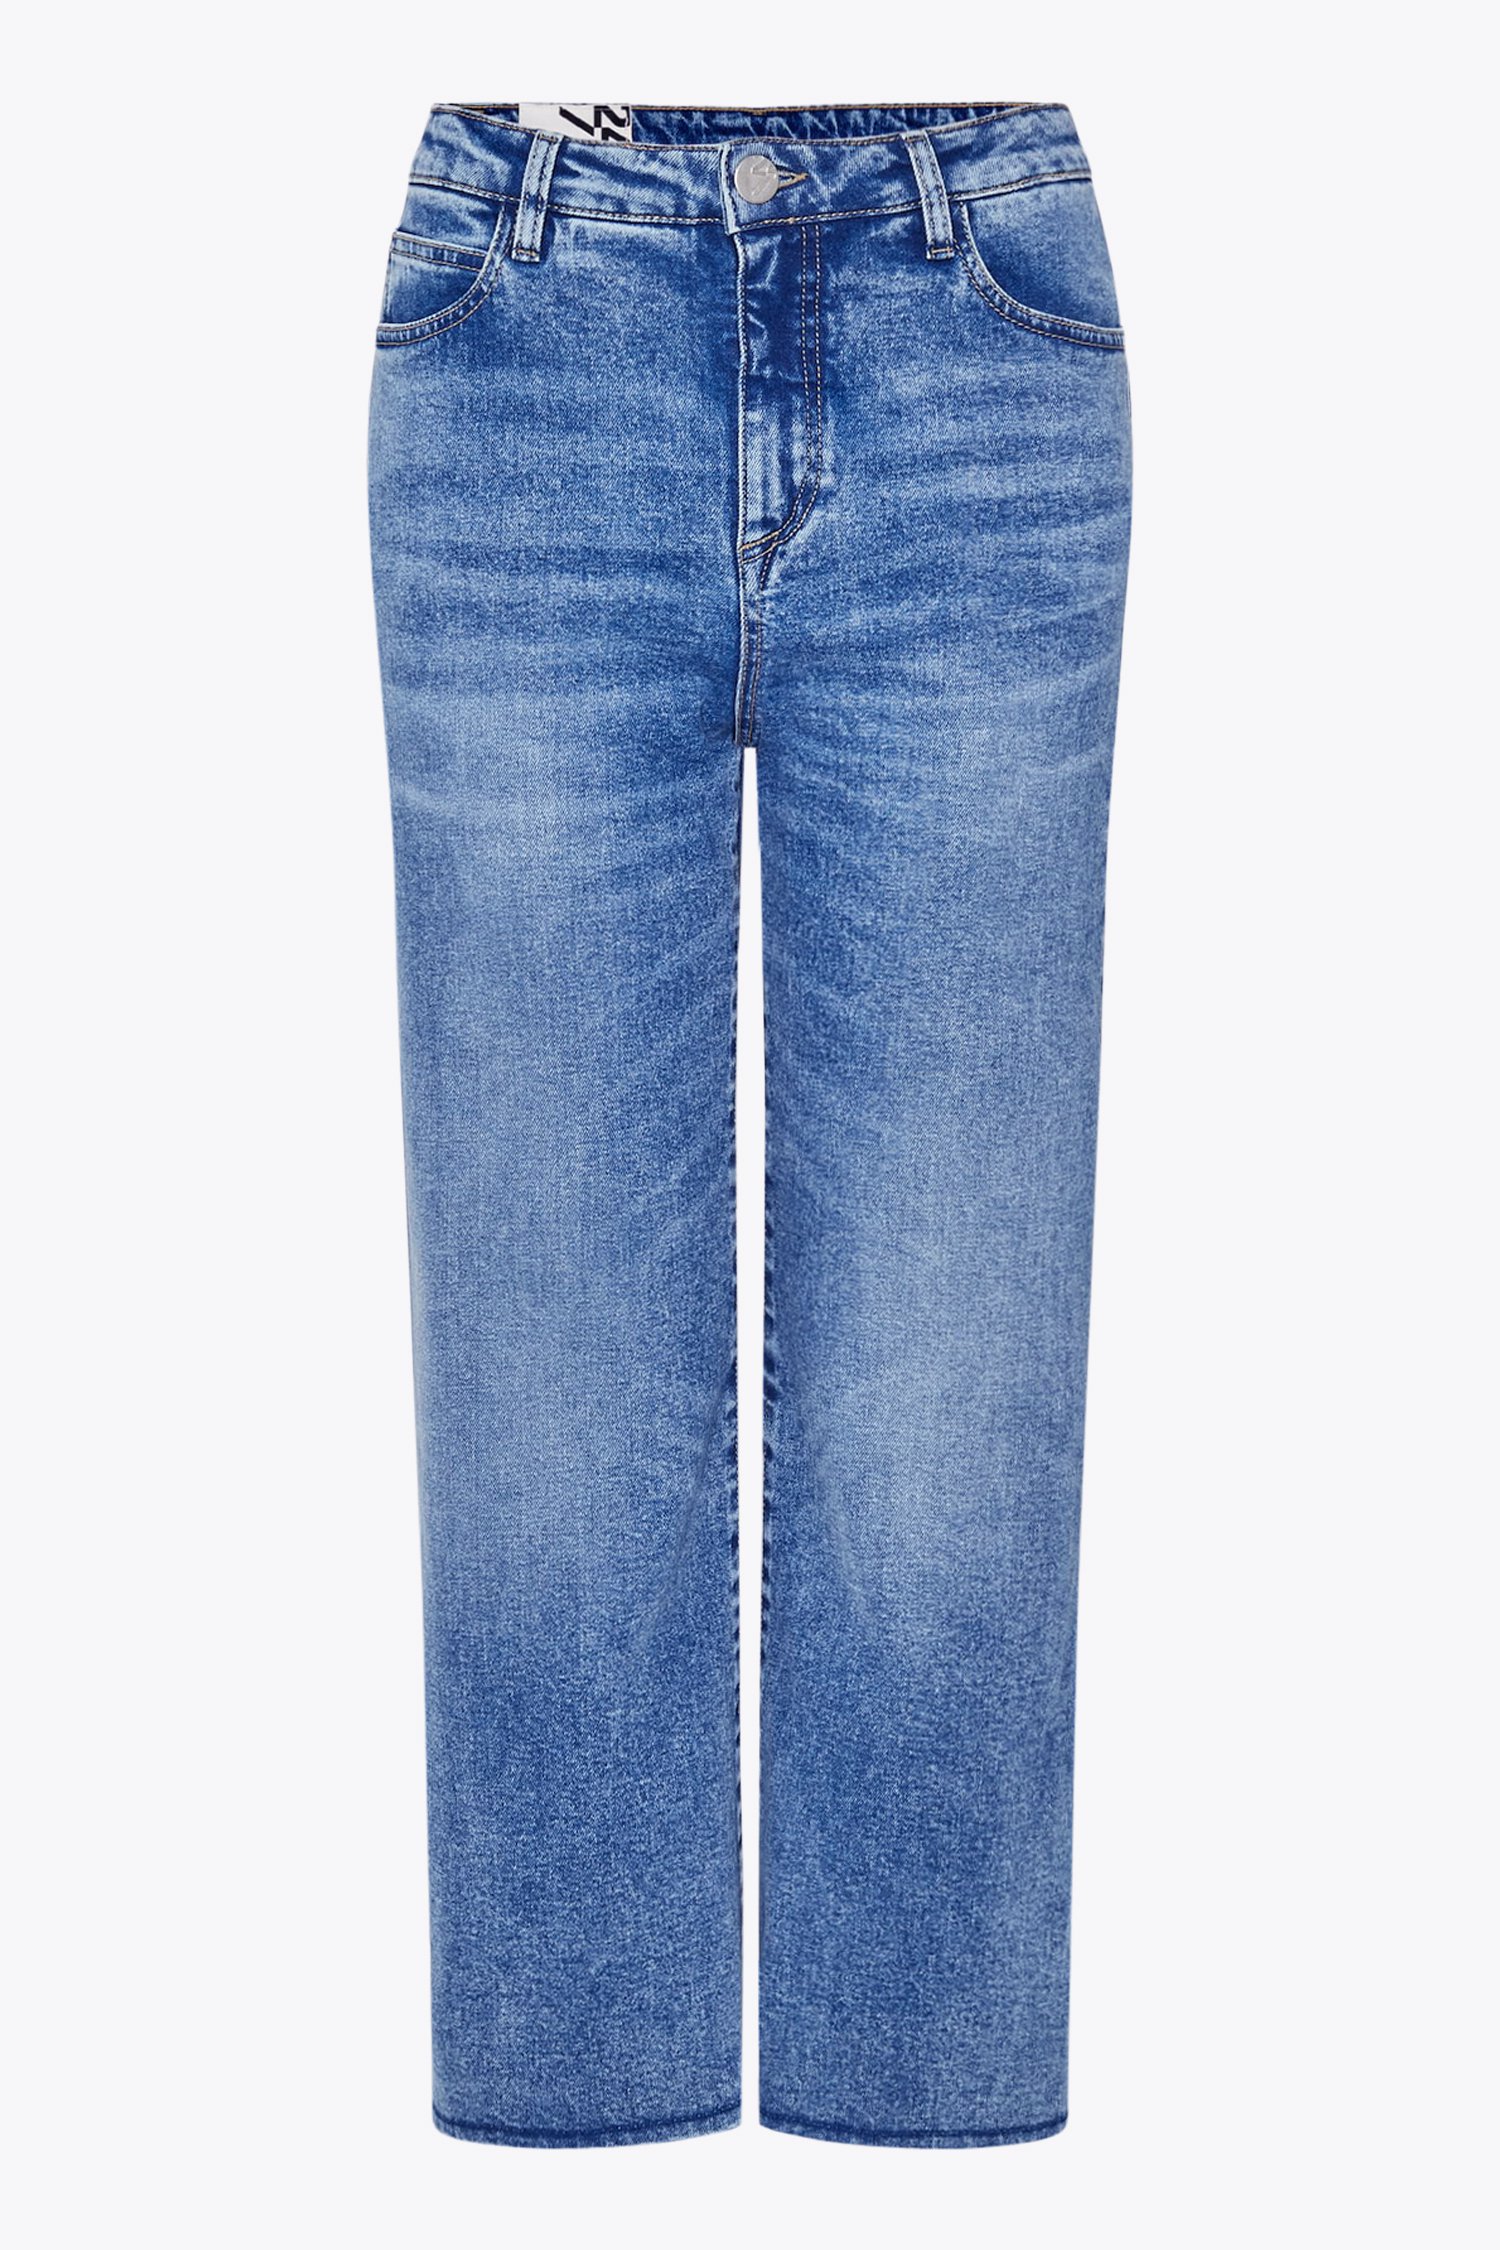 Donkerblauwe jeans - culotte van Opus voor Dames